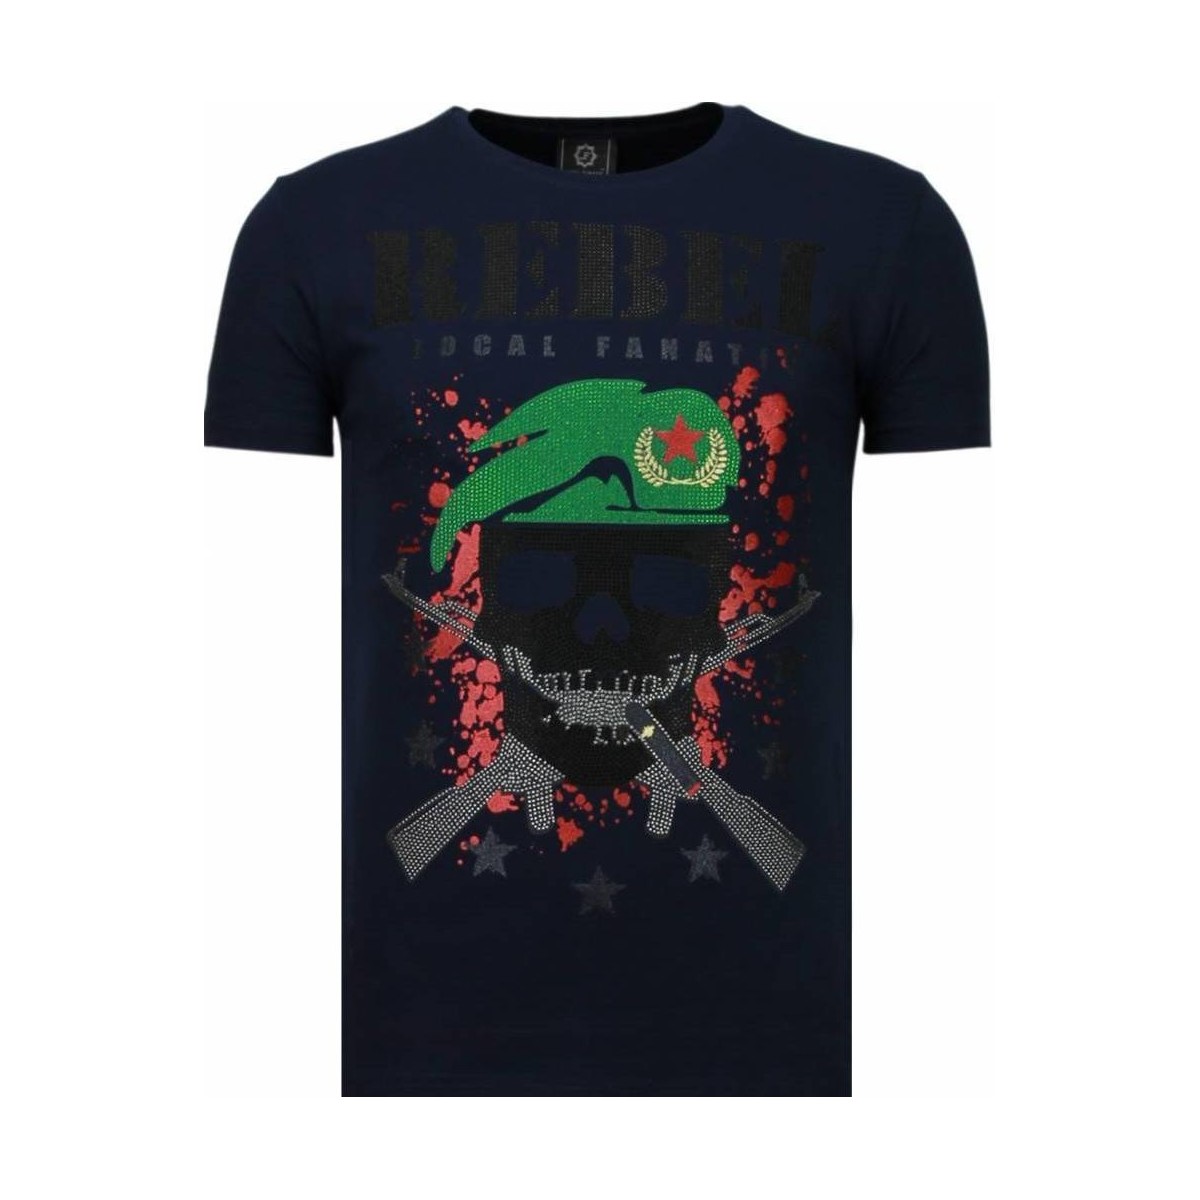 textil Herr T-shirts Local Fanatic Skull Rebel Rhinestone B Svart